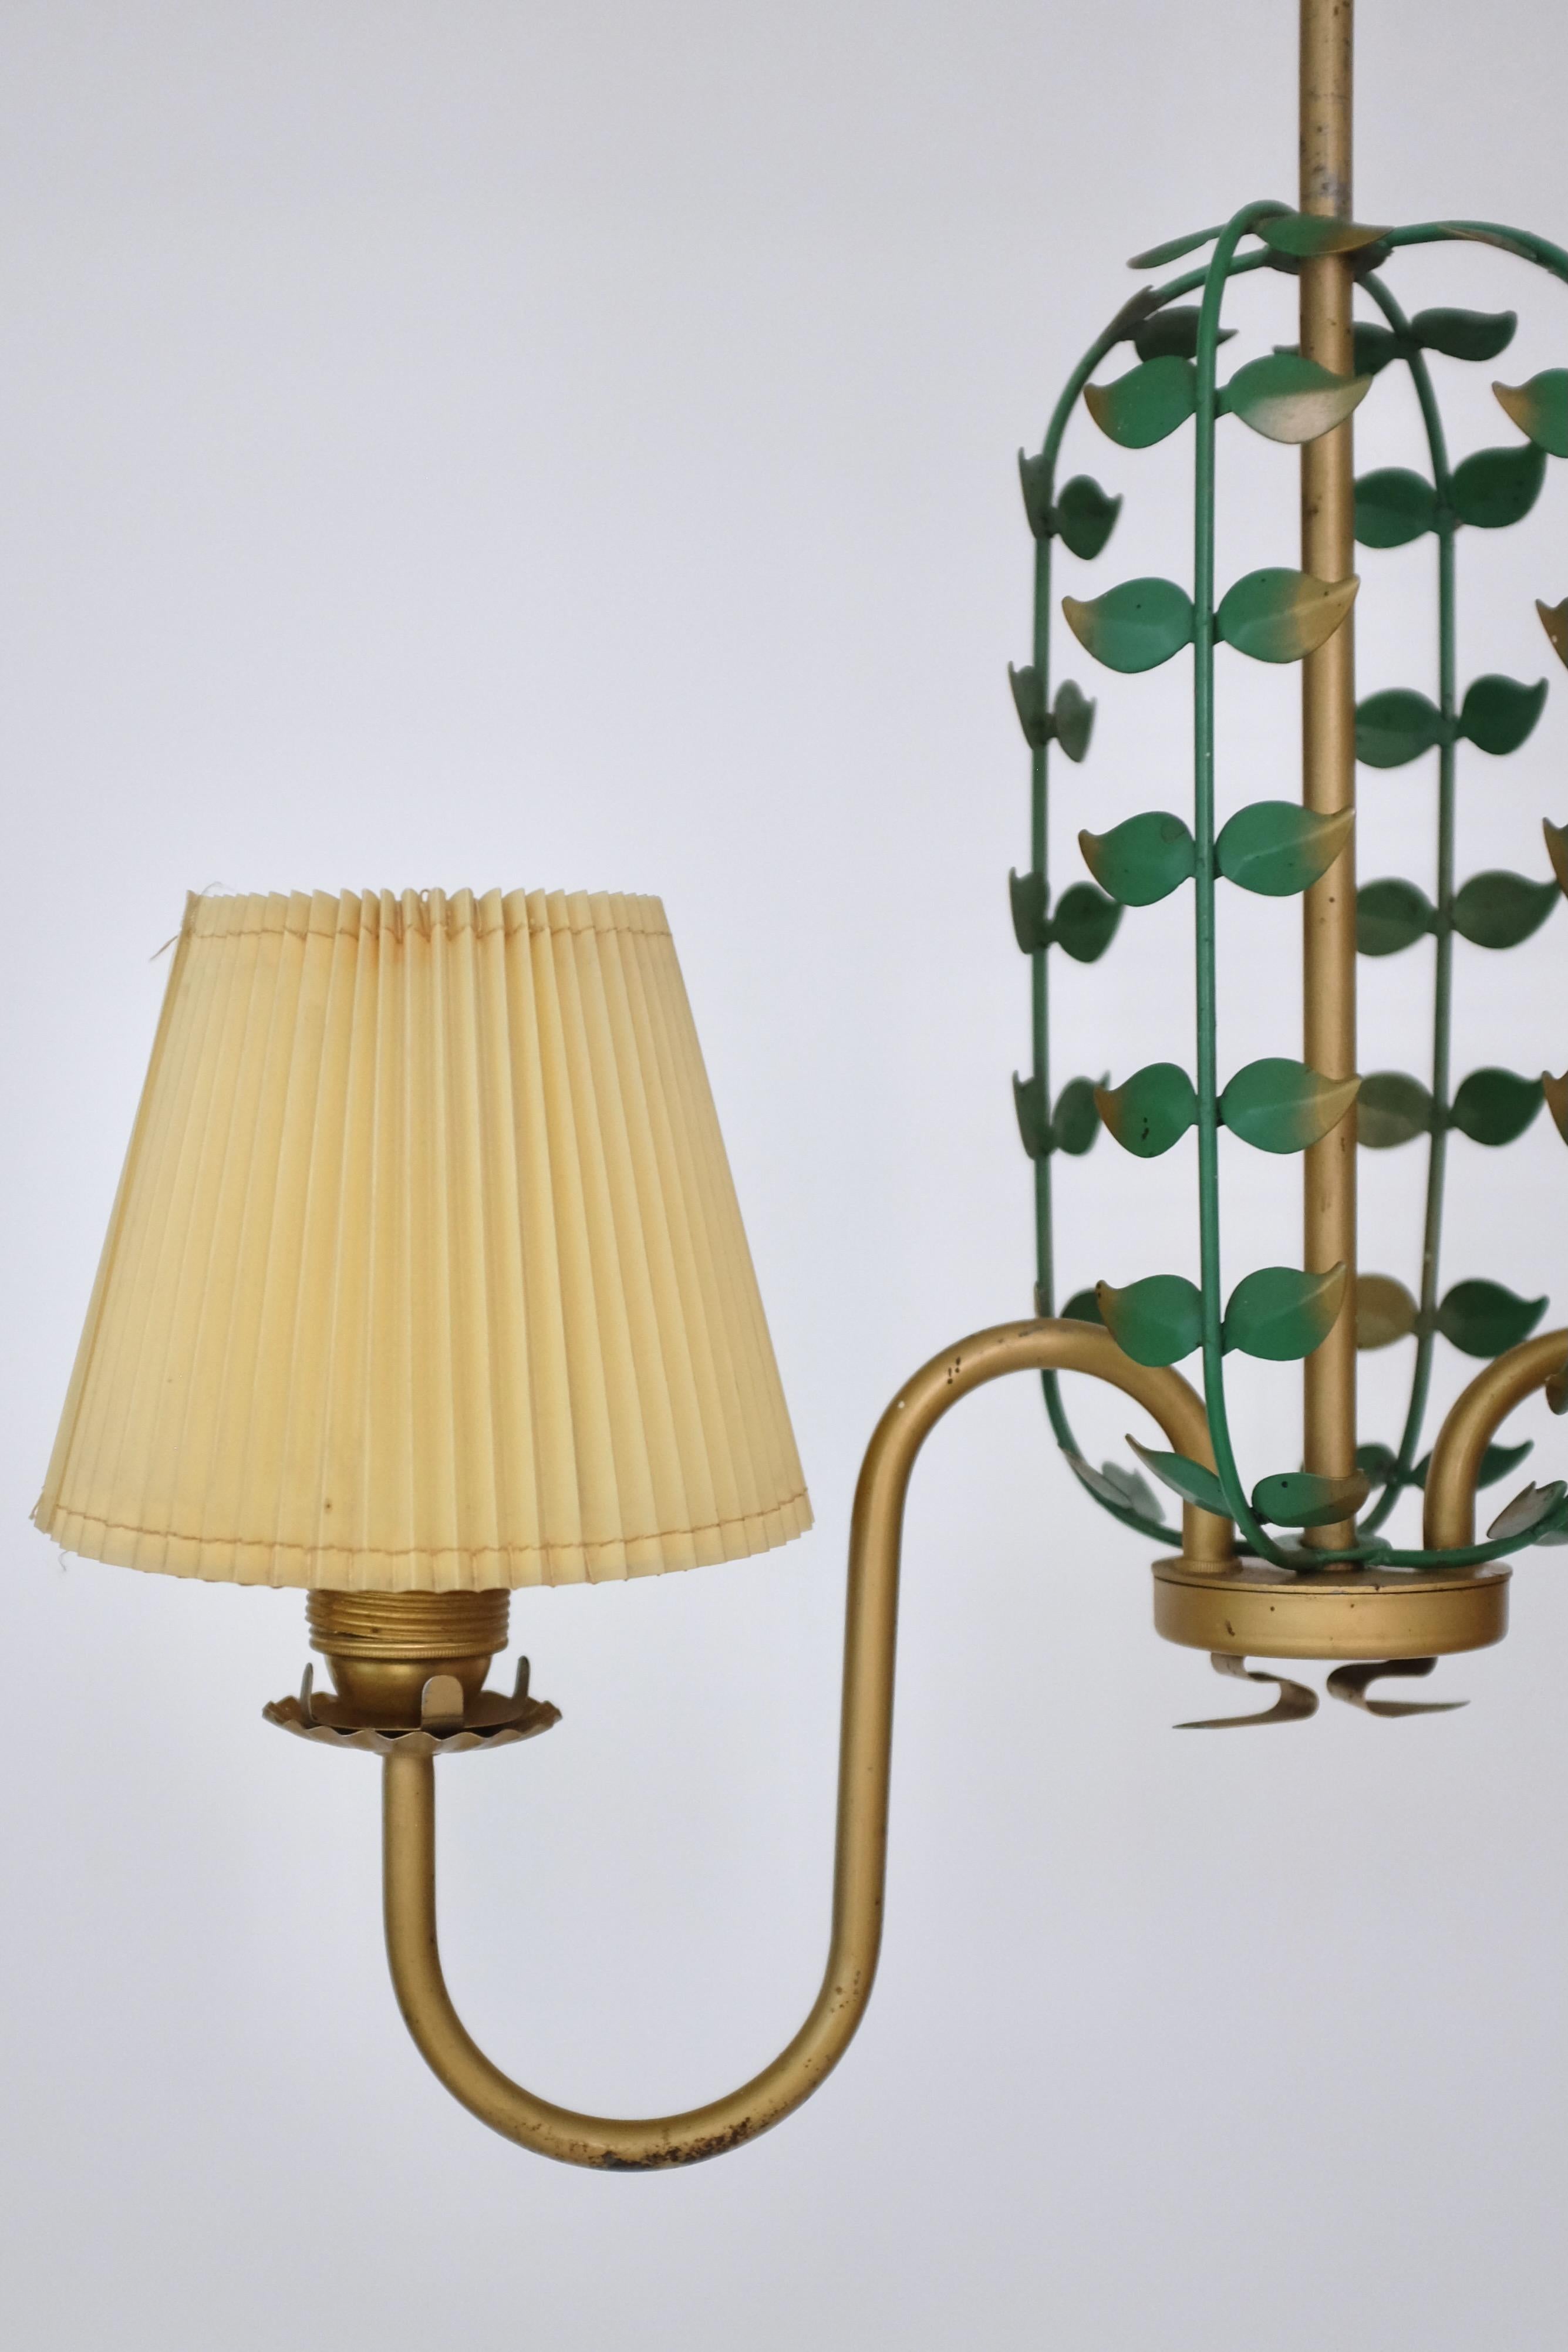 Pendentif moderne suédois avec une cage de feuilles décorative entre deux bras de lampe incurvés. Métal peint en or et vert avec des abat-jours en plastique plissé d'origine, probablement pour l'extérieur. Très décoratif, il met en valeur les lignes